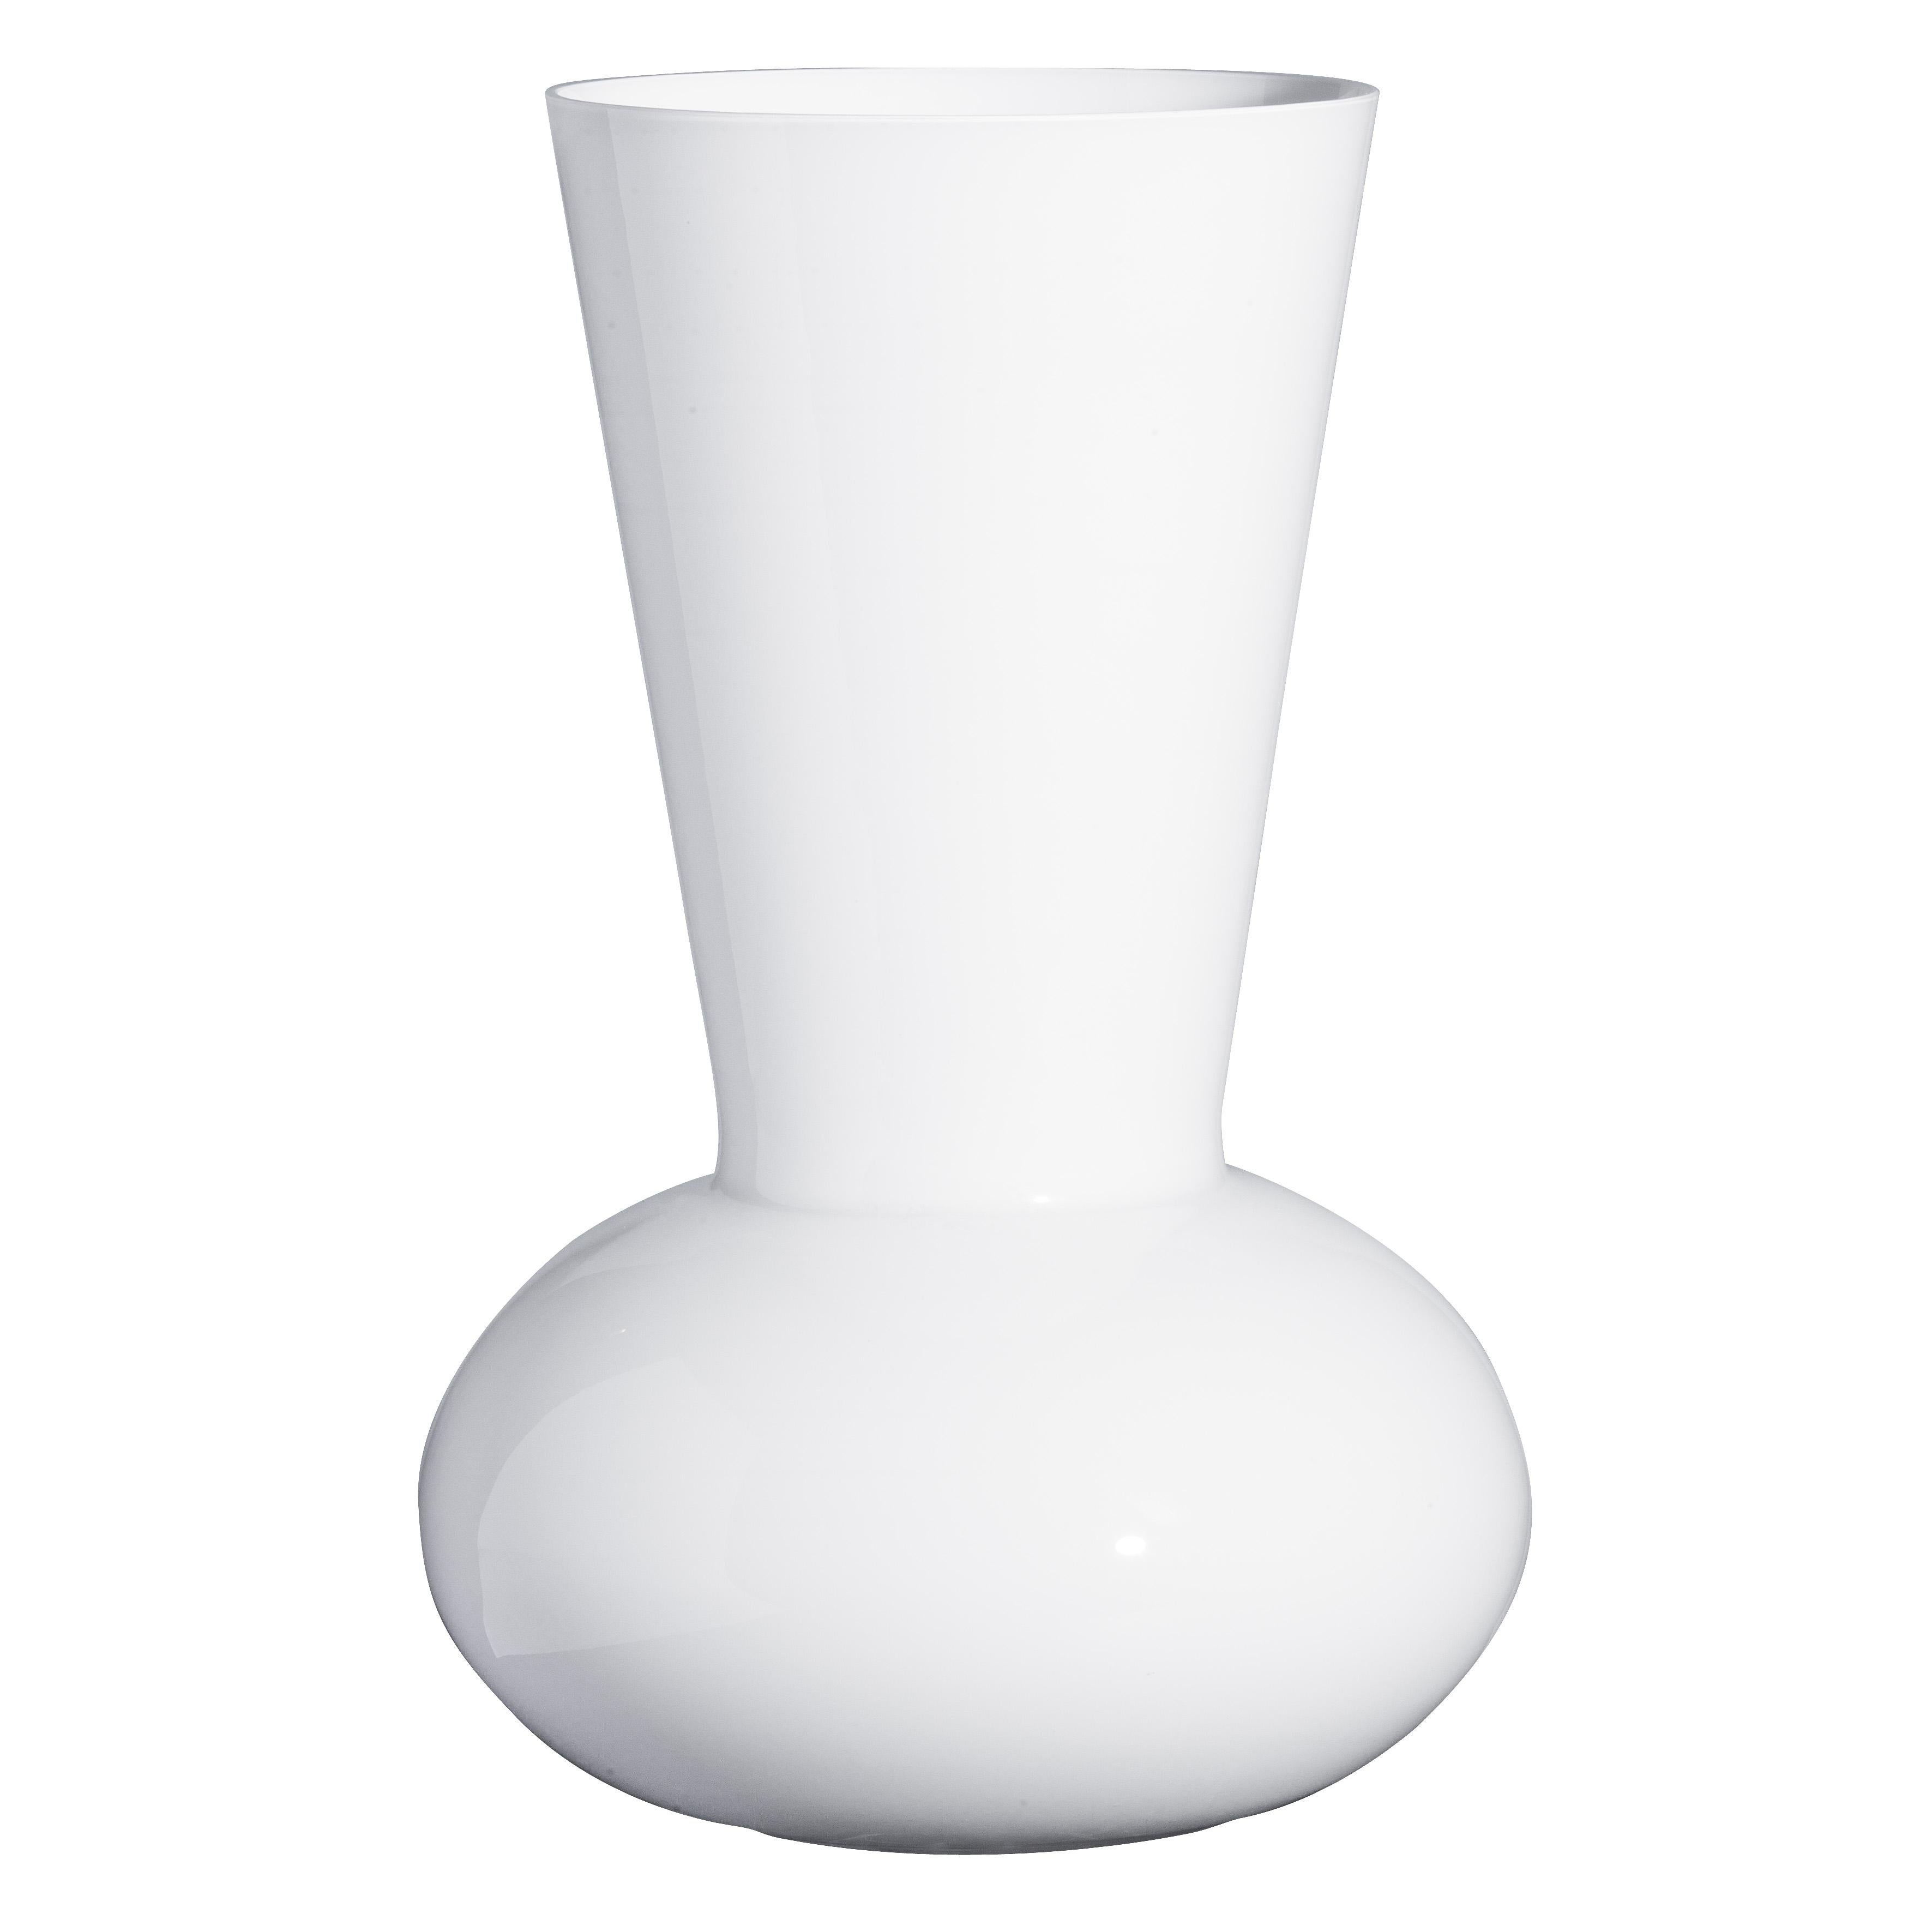 Grand vase Troncosfera blanc en blanc par Carlo Moretti